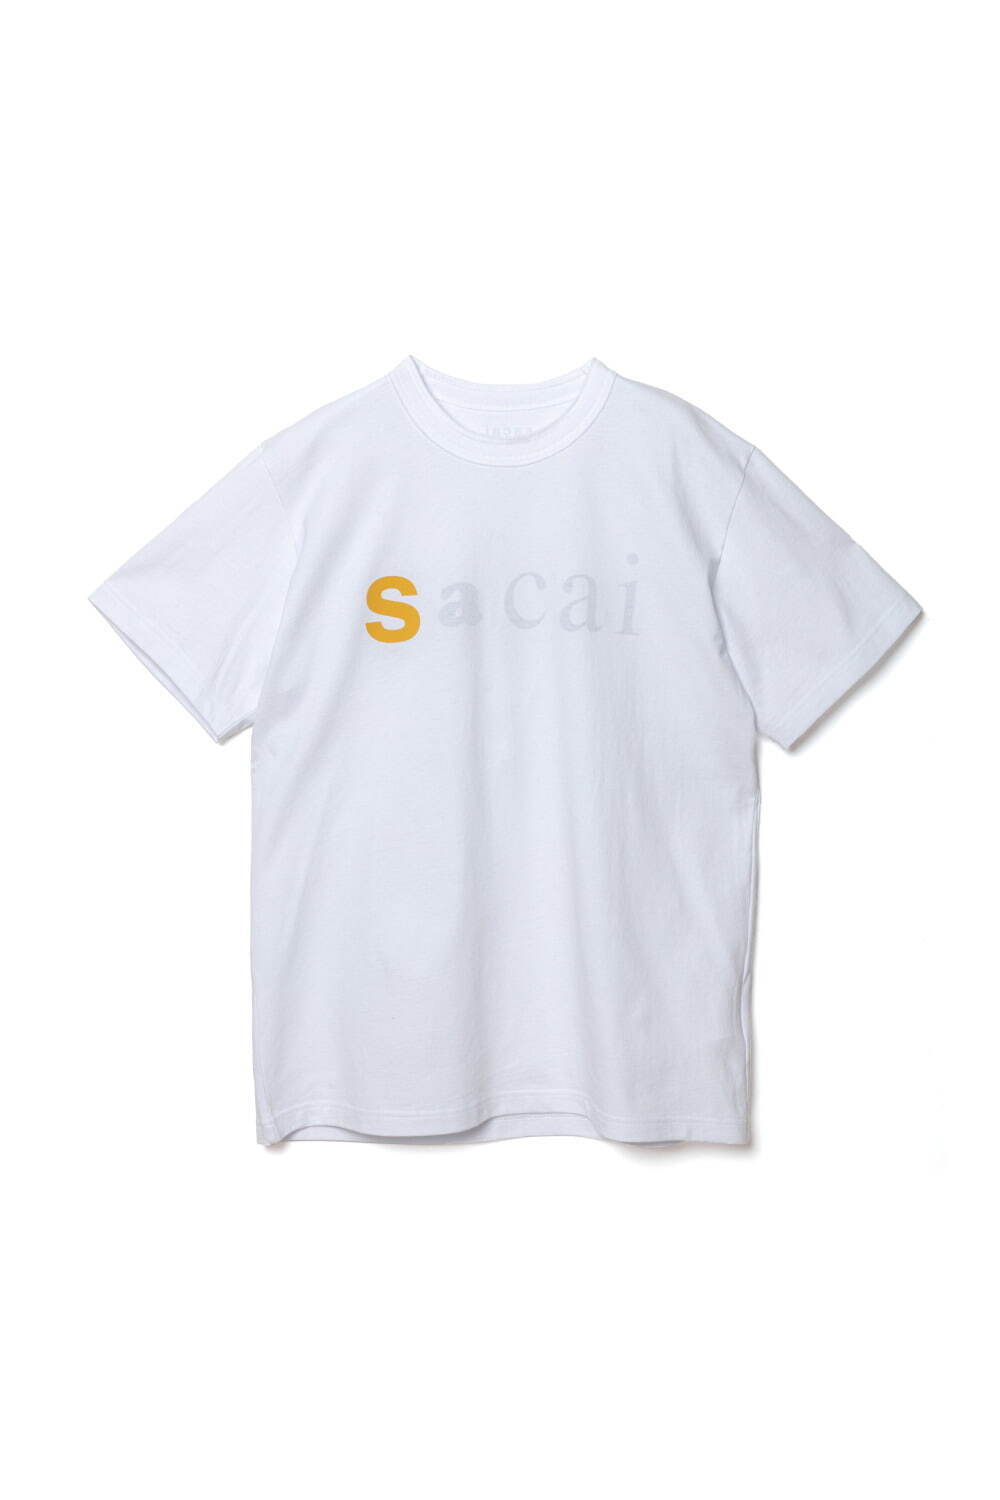 sacai“ロゴ入り”Tシャツ＆ソックス、“バンダナ柄×ナイロン素材”の